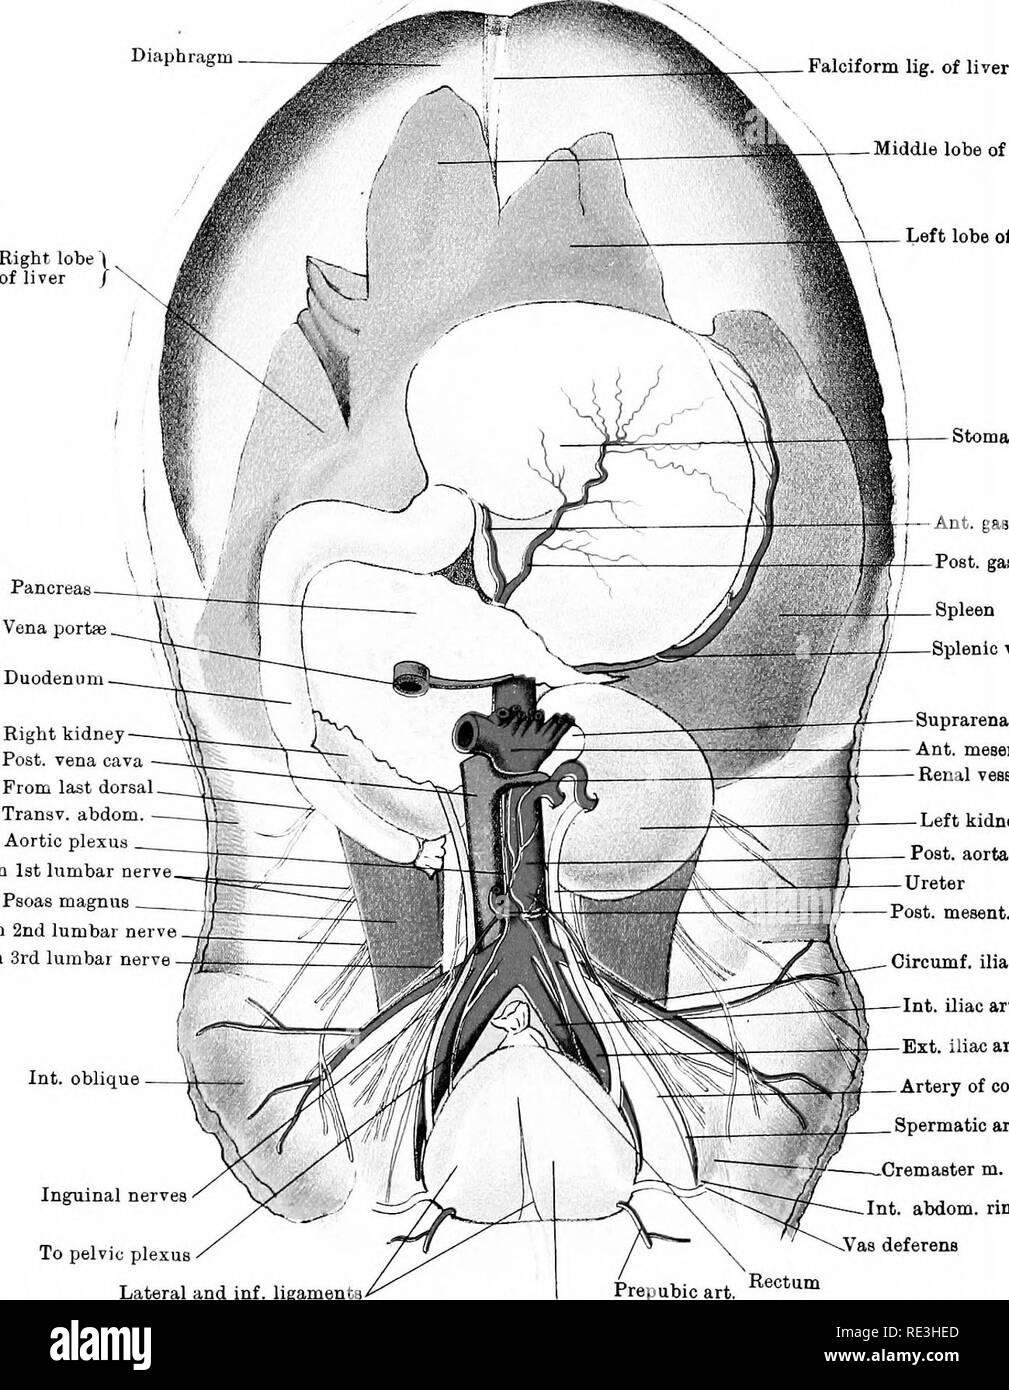 . L'anatomie du cheval, une dissection guide. Les chevaux. XLIV PLAQUE X -cartilage Ensiform lig suspenseur diaphragme. de lobe central du foie foie de ^ Pancreaa llTer lobe gauche de Vena portse. Ant l'estomac gastrique. art. Post, ar gastrique* rate vaisseaux spléniques duodénum rein droit publiez, vena cava de dorsale. Tranav dernière abdom. - Pltjxus aortique ist oerve Prom lombaire Psoas magnus du 2e nerf lombaire lombaire de la 3ème Int. nerveuses nerfs inguinaux oblique à plexus pelvien corps surrénale Ant. mesent. art, vaisseaux rénaux rein gauche Post, mesent. art, Circumf. art. art. iliaque iliaque Int. Ext. Iliac Art Art Banque D'Images